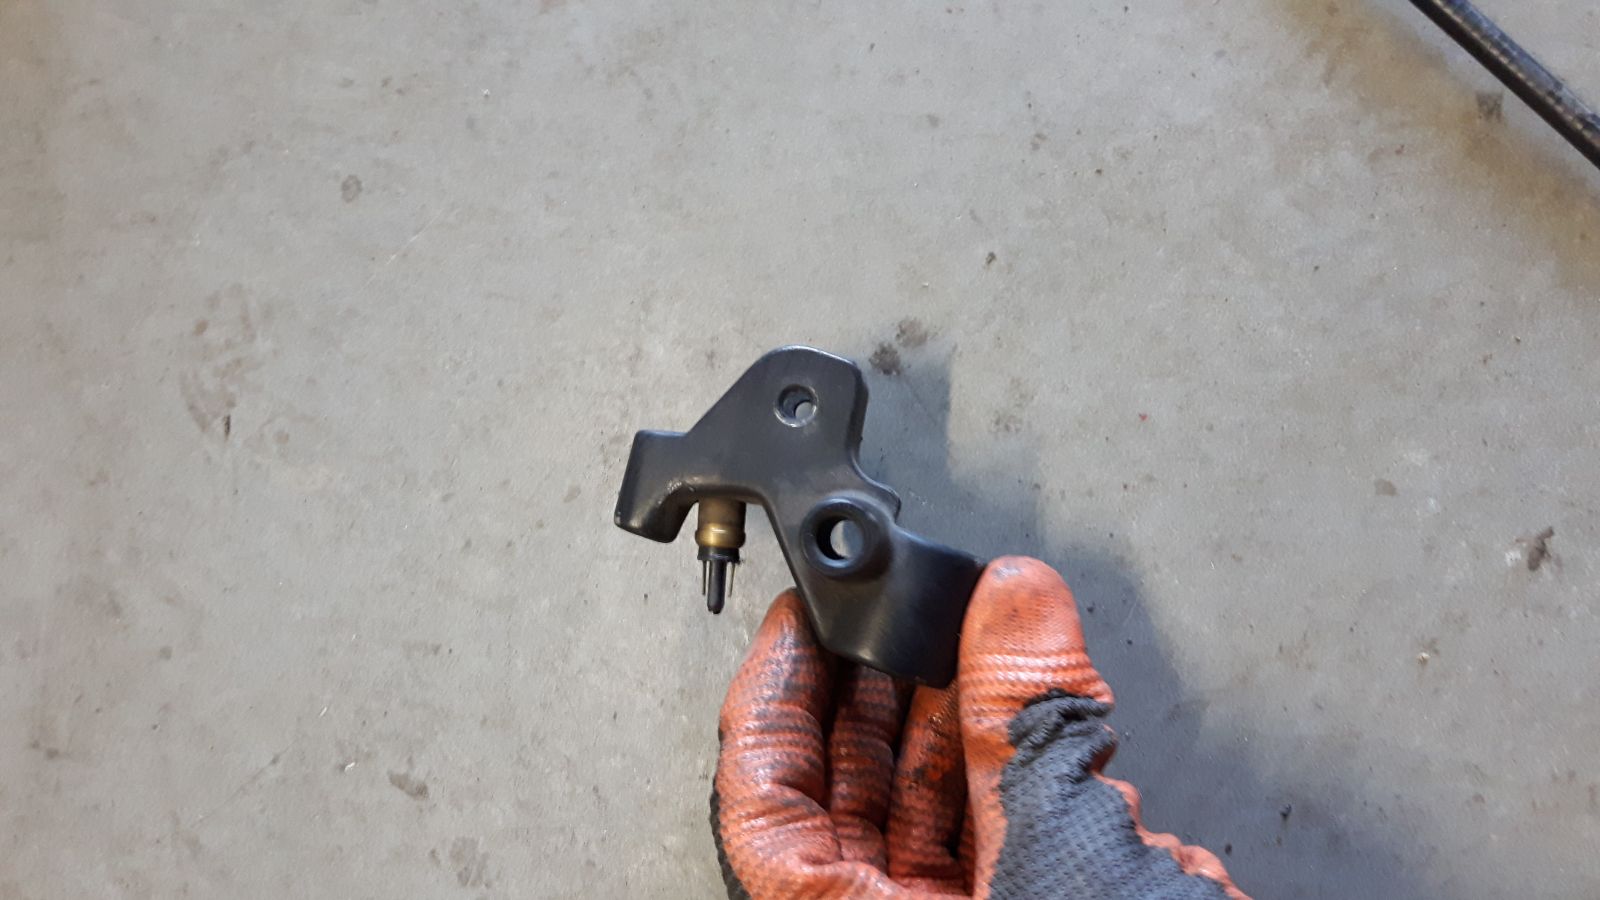 Peugeot Zenith right brake handle holder